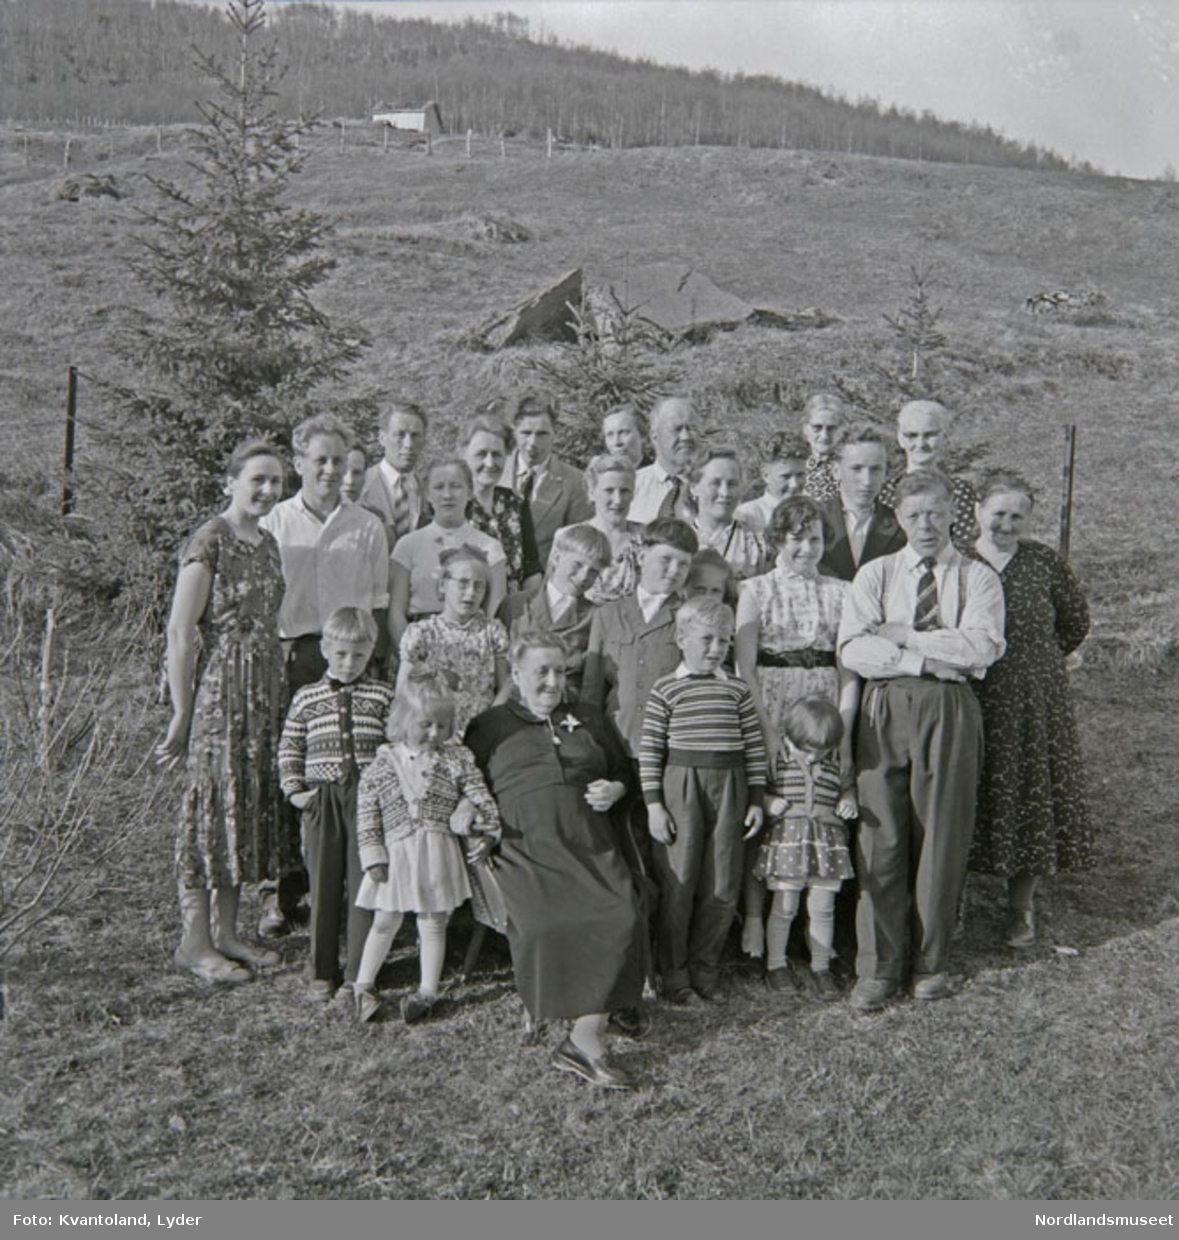 Kvantolands protokoll: Kristianna D. sammen med noen koner fra Bonå + Severine Arntzen
Kristianna Danielsen
Horndal